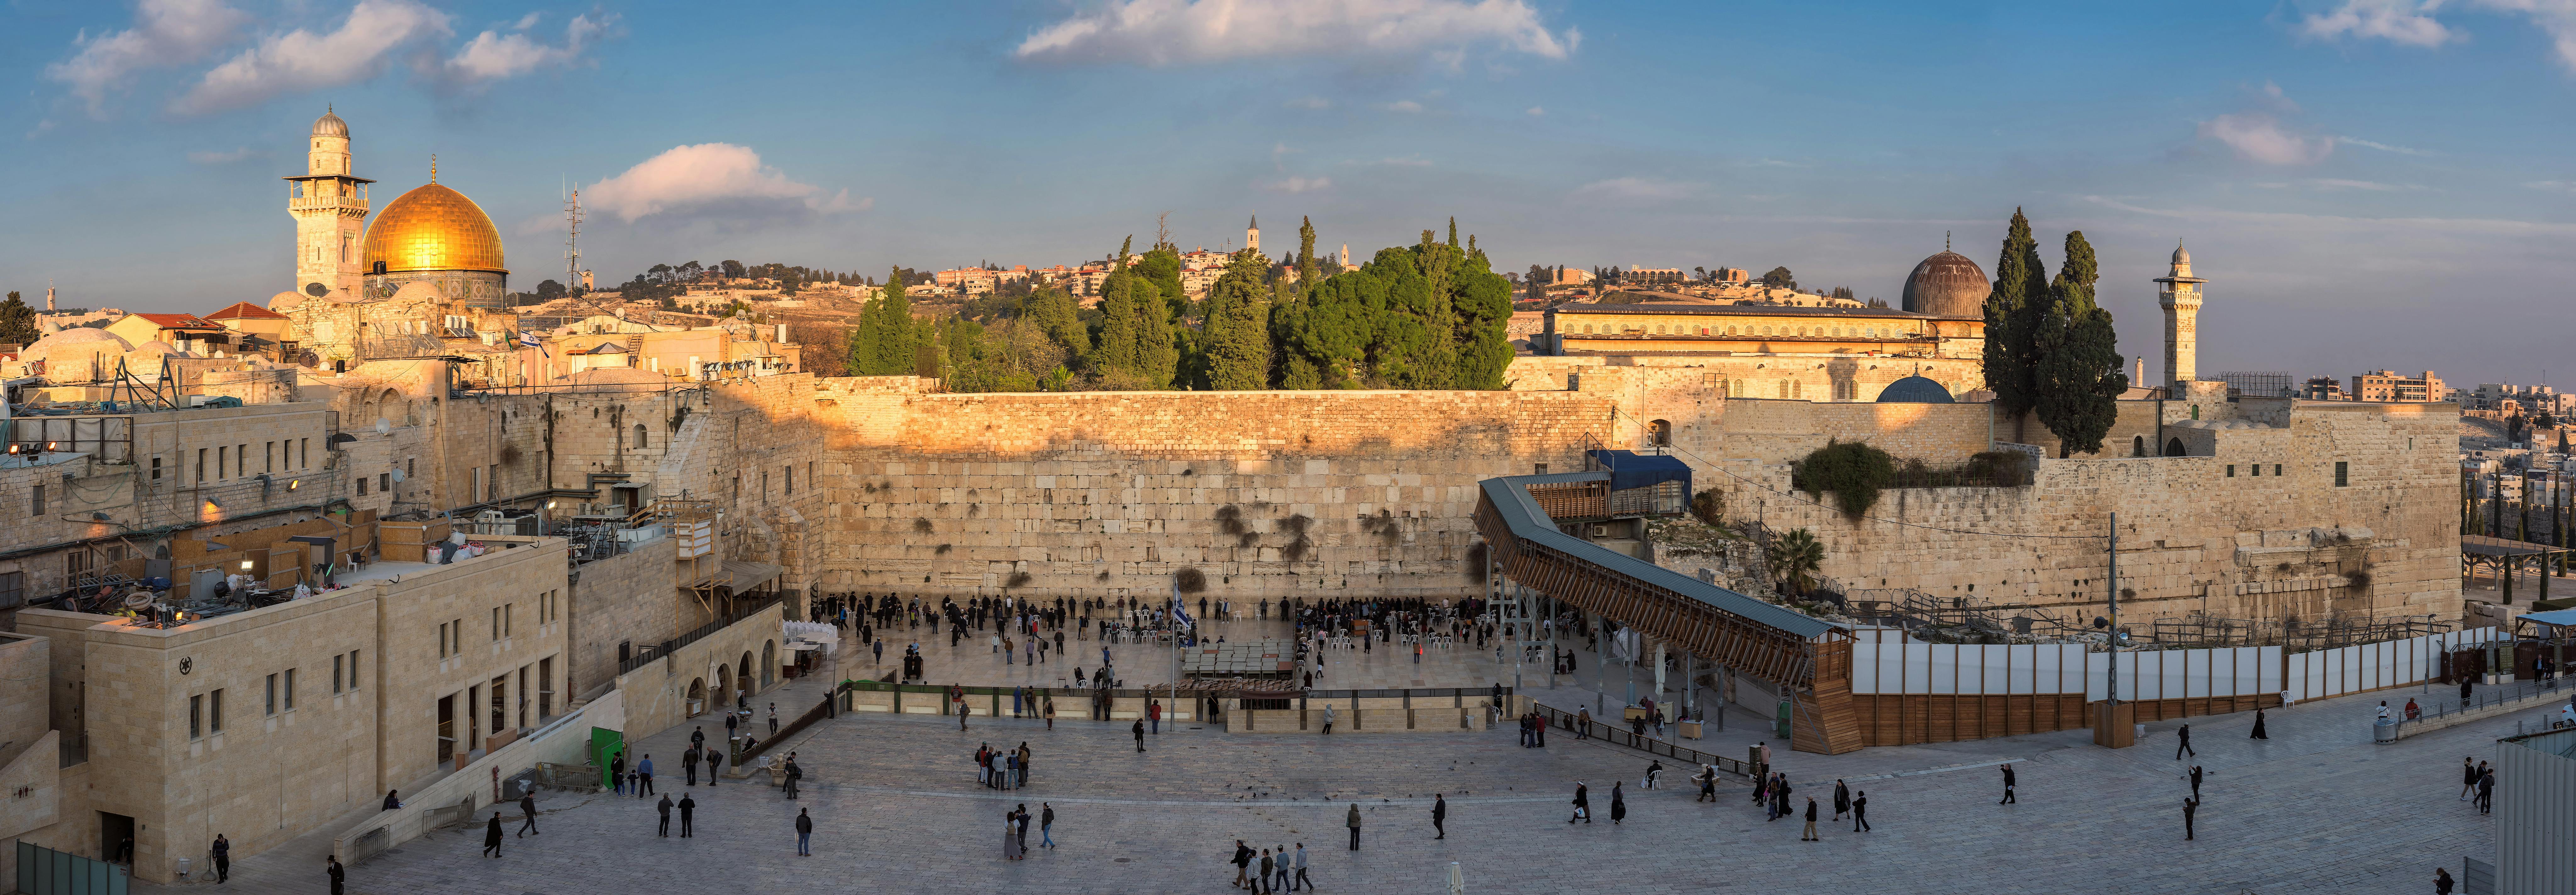 Excursão histórica e moderna de dia inteiro a Jerusalém saindo de Tel-Aviv